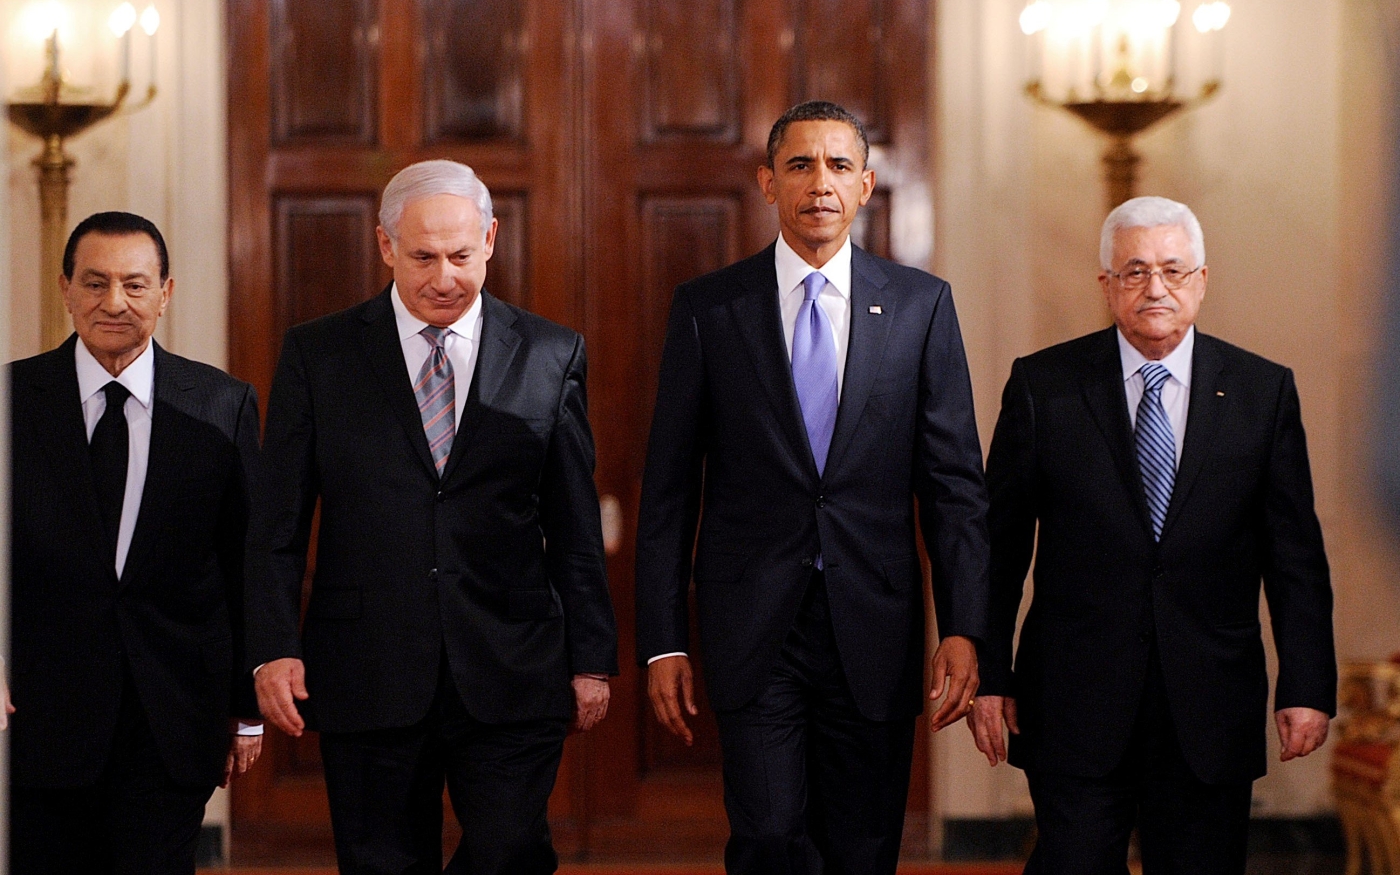 Le président américain Barack Obama s’avance avec les dirigeants du Moyen-Orient dans l’East Room de la Maison-Blanche, à Washington D.C. (États-Unis), le 1er septembre 2010 (Reuters)